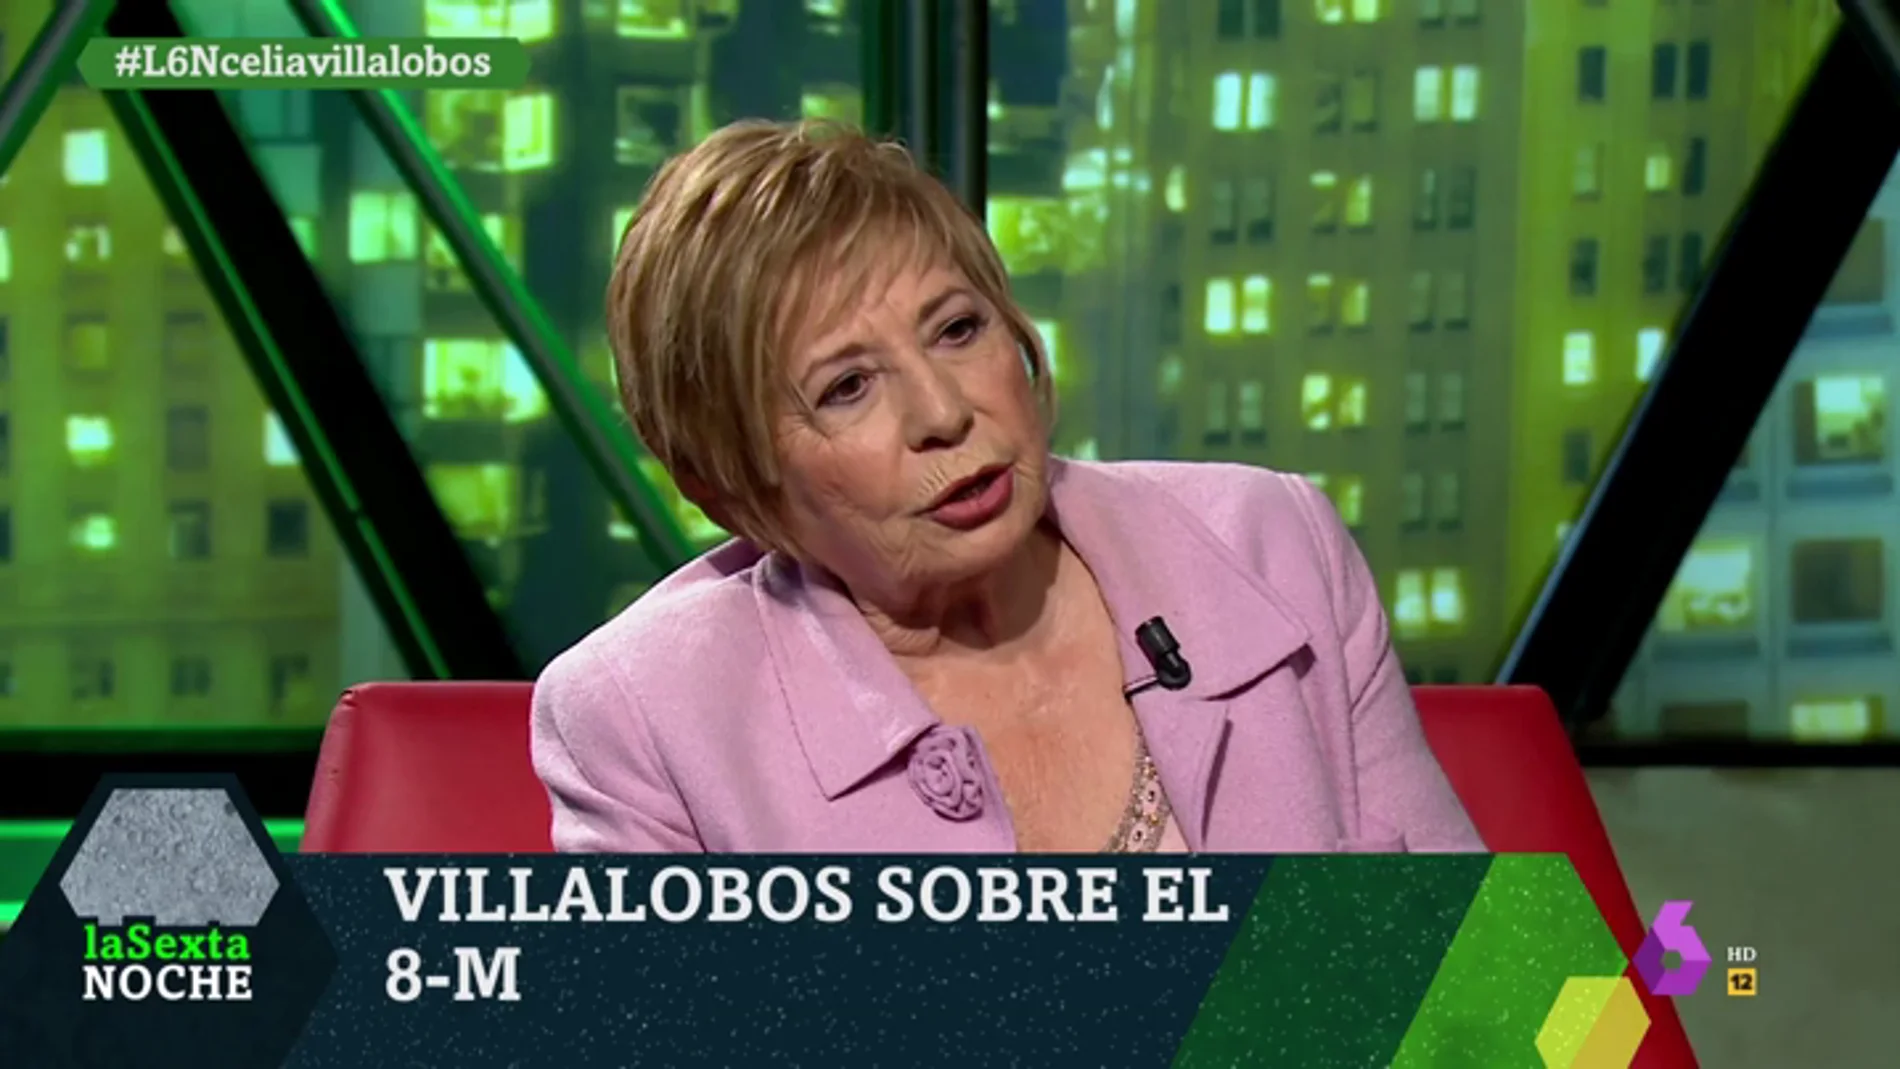 Villalobos: "Le digo a los hombres que el día que lloren se darán cuenta de lo que se han perdido"